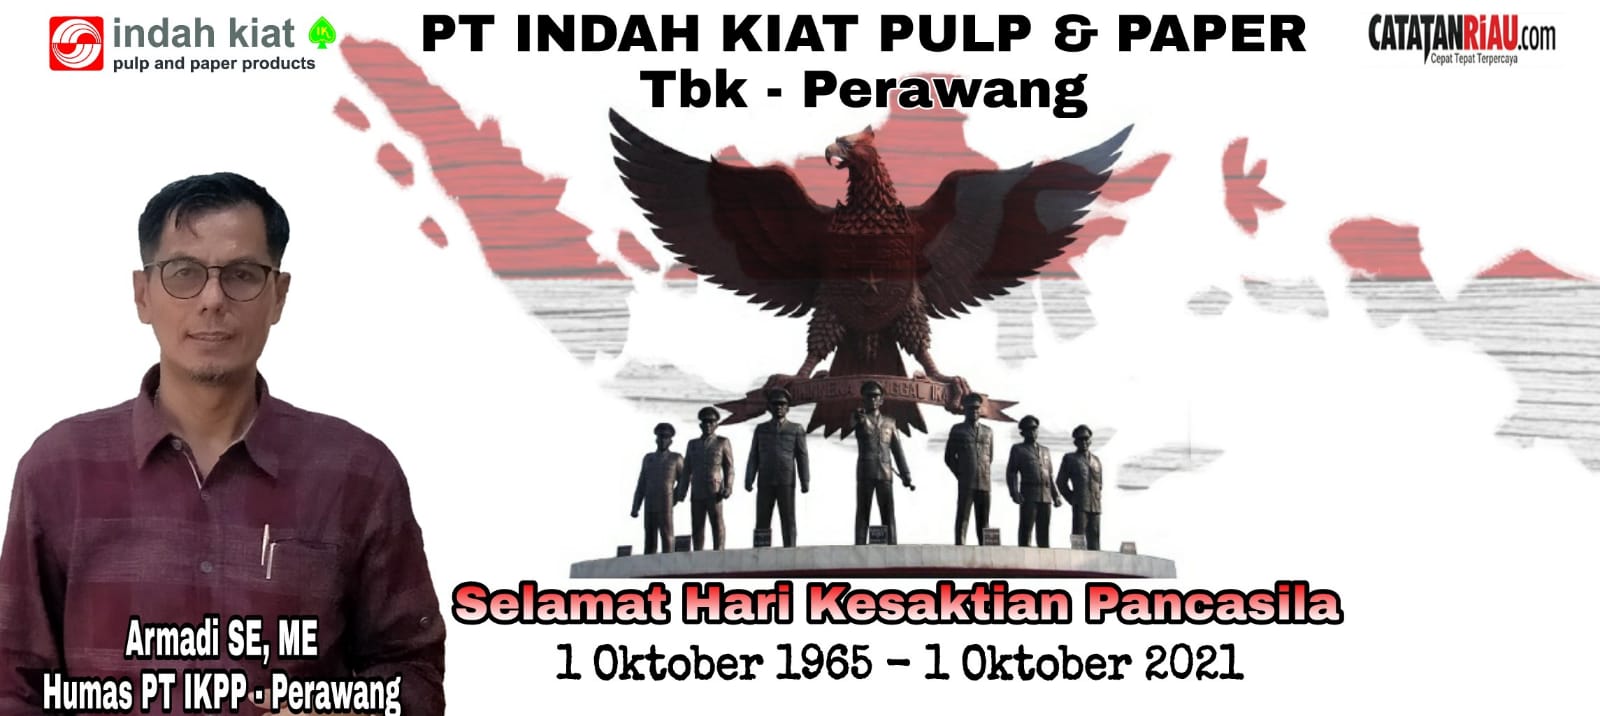 PT Indah Kiat Pulp & Paper Tbk - Perawang, Selamat Hari Kesaktian Pancasila 1 Oktober 2021